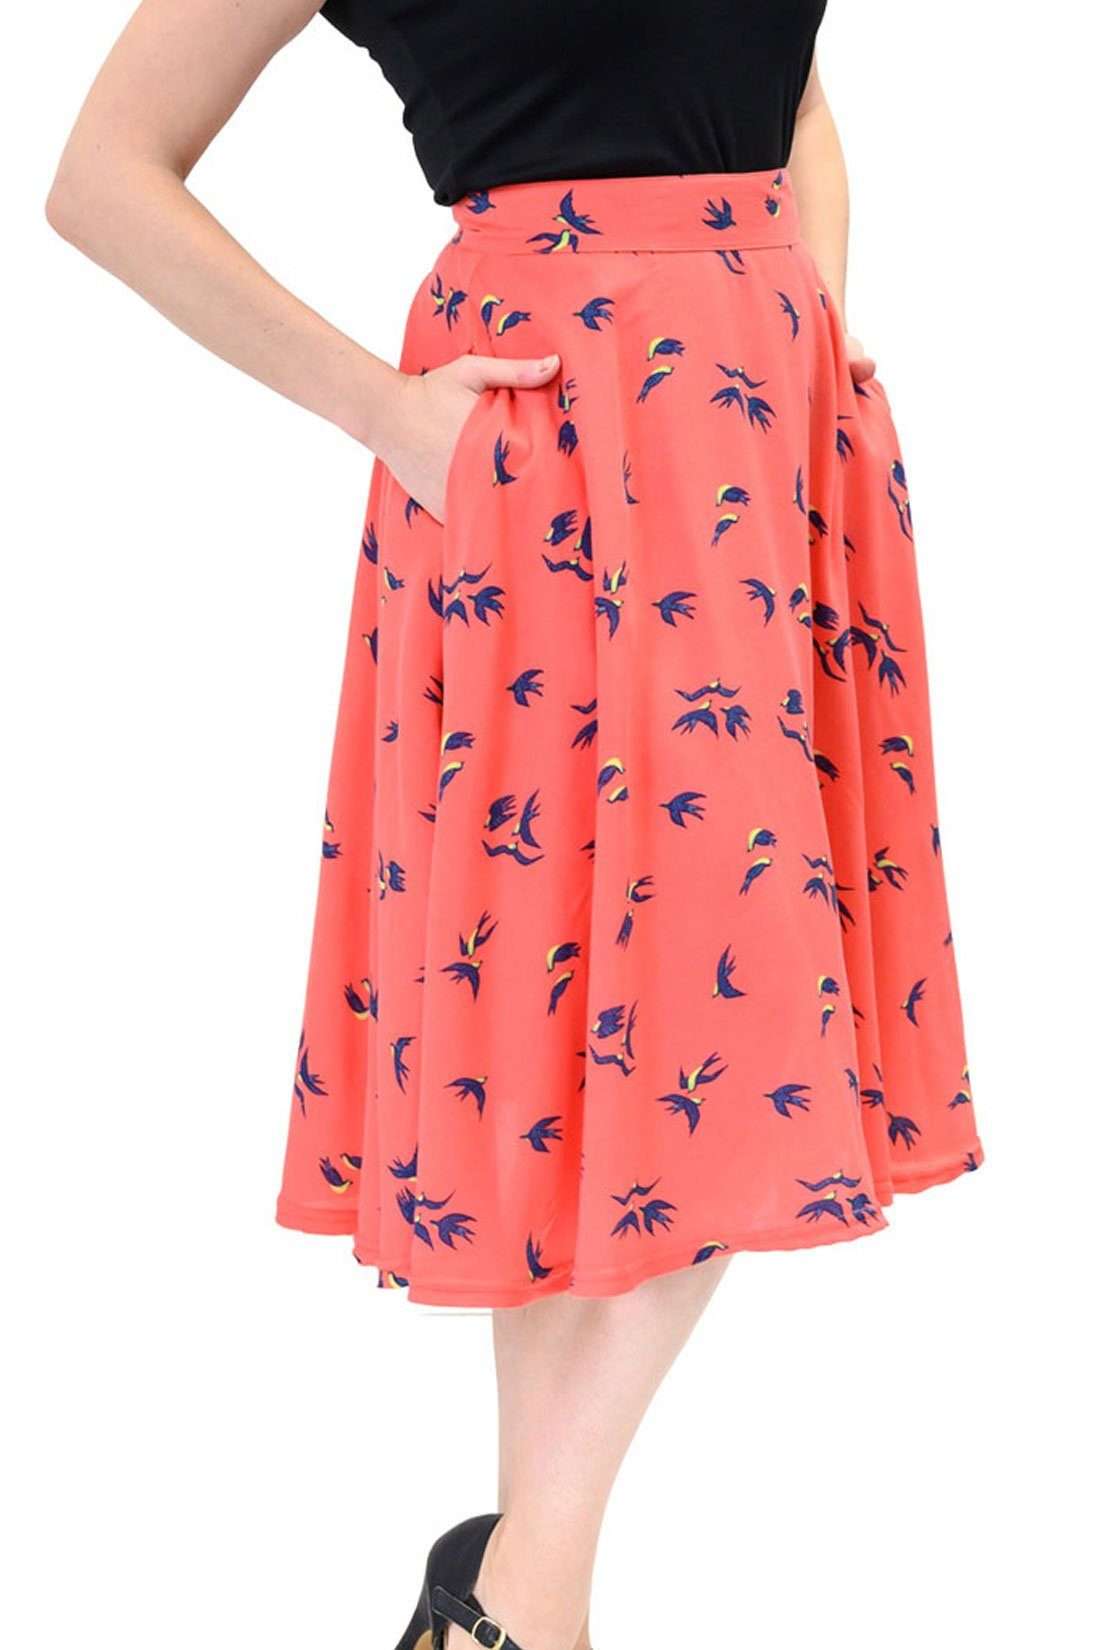 Юбка-трапеция Birdie Thrills Коралловая винтажная распашная юбка в стиле ретро